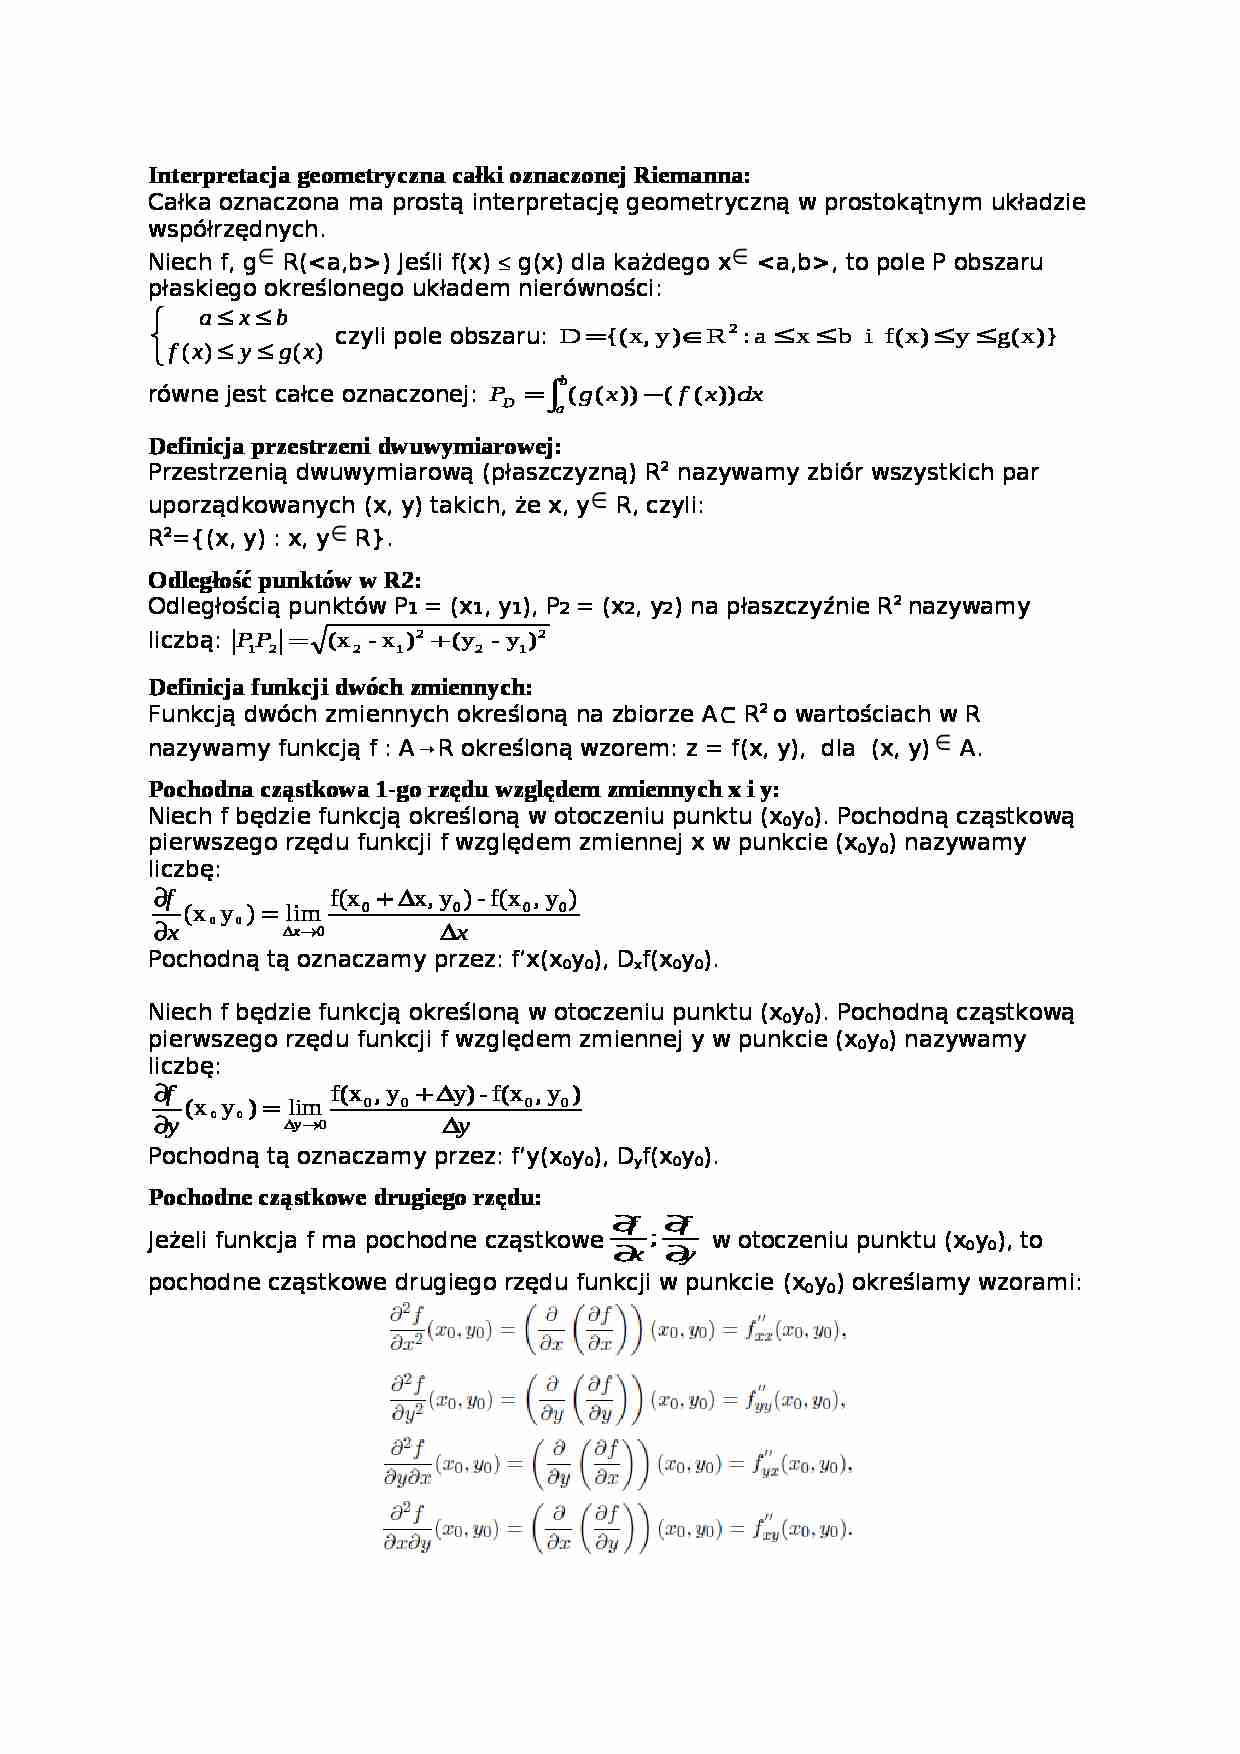 Interpretacja geometryczna całki oznaczonej Riemanna - omówienie - strona 1